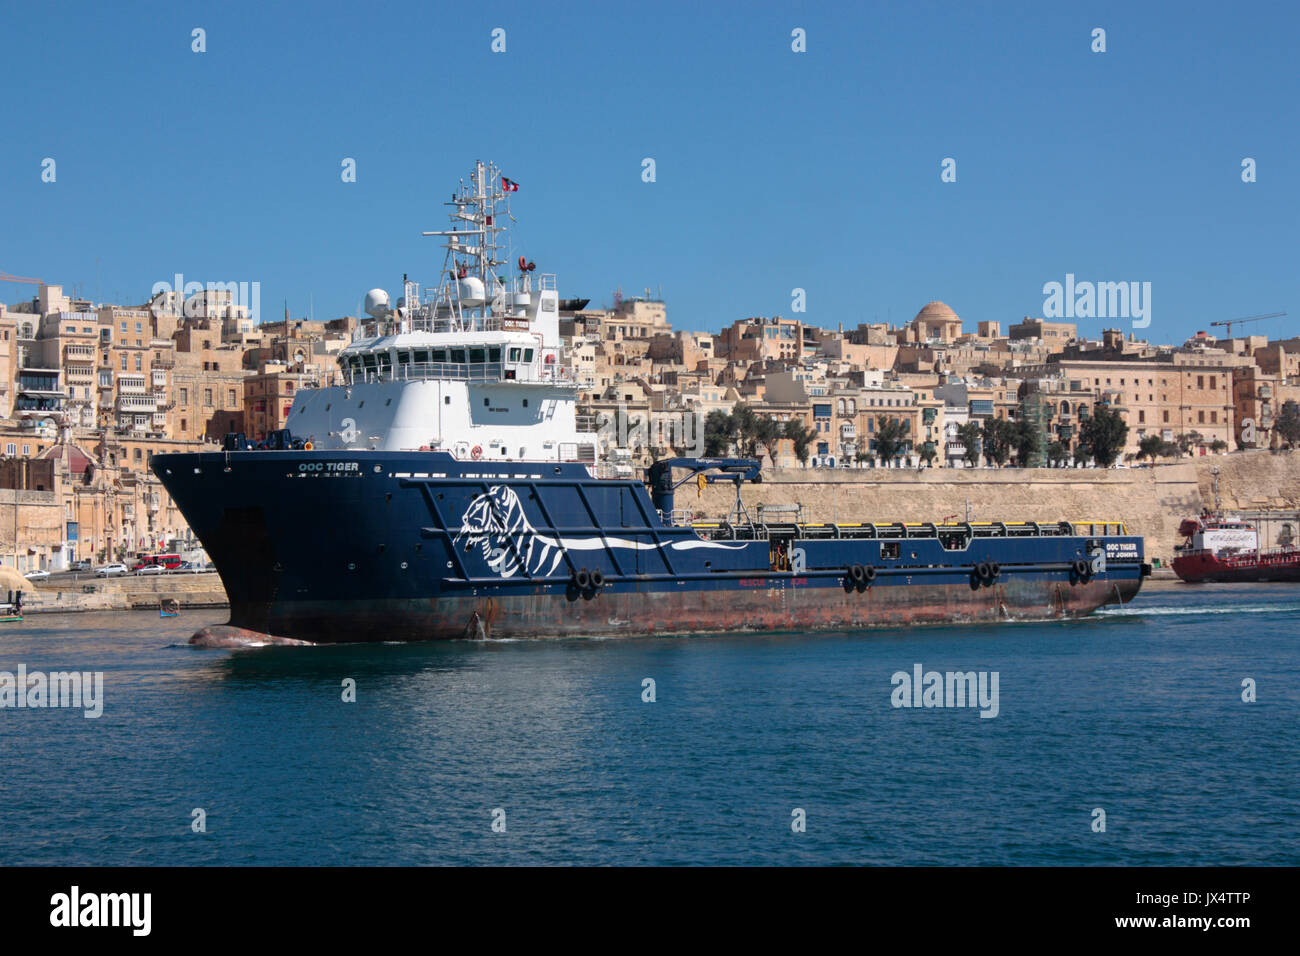 Le navire d'approvisionnement de la plate-forme (PSV) ou le navire de ravitaillement offshore OOC Tiger passe par la ville fortifiée de La Valette en entrant dans le Grand Port de Malte Banque D'Images